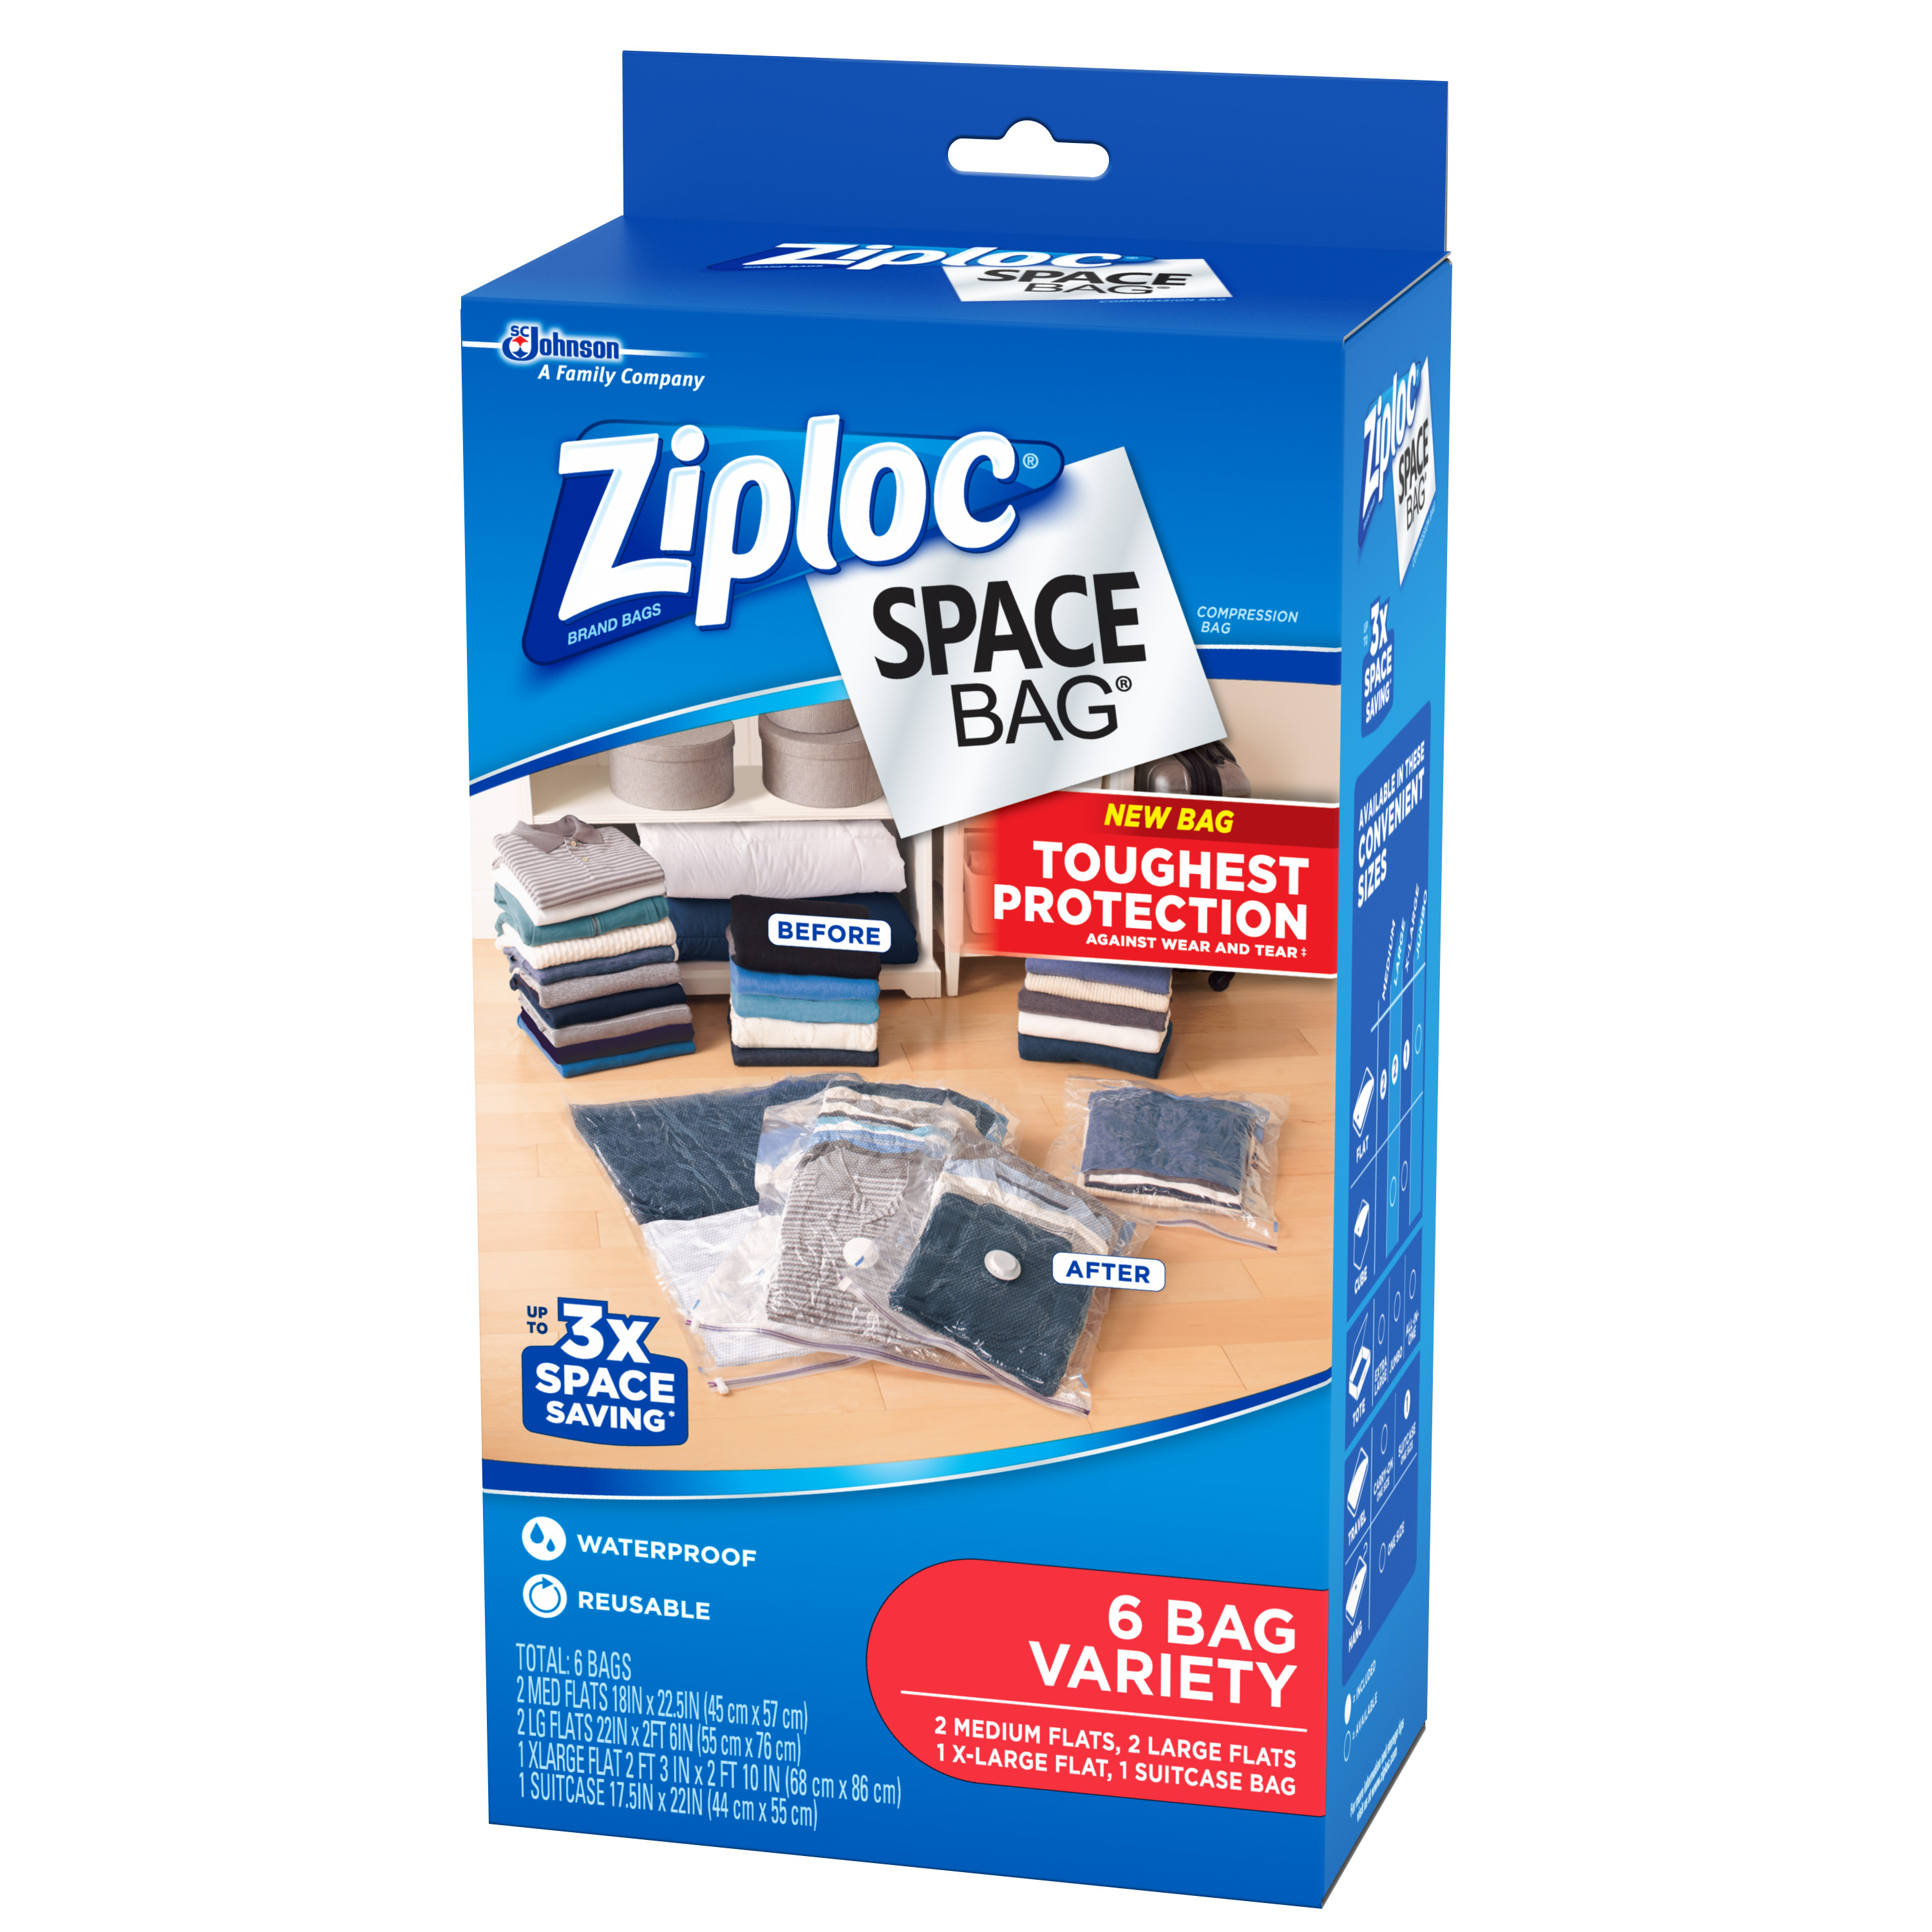 Ziploc Space Bag, Variety, 6 bags - image 3 of 5